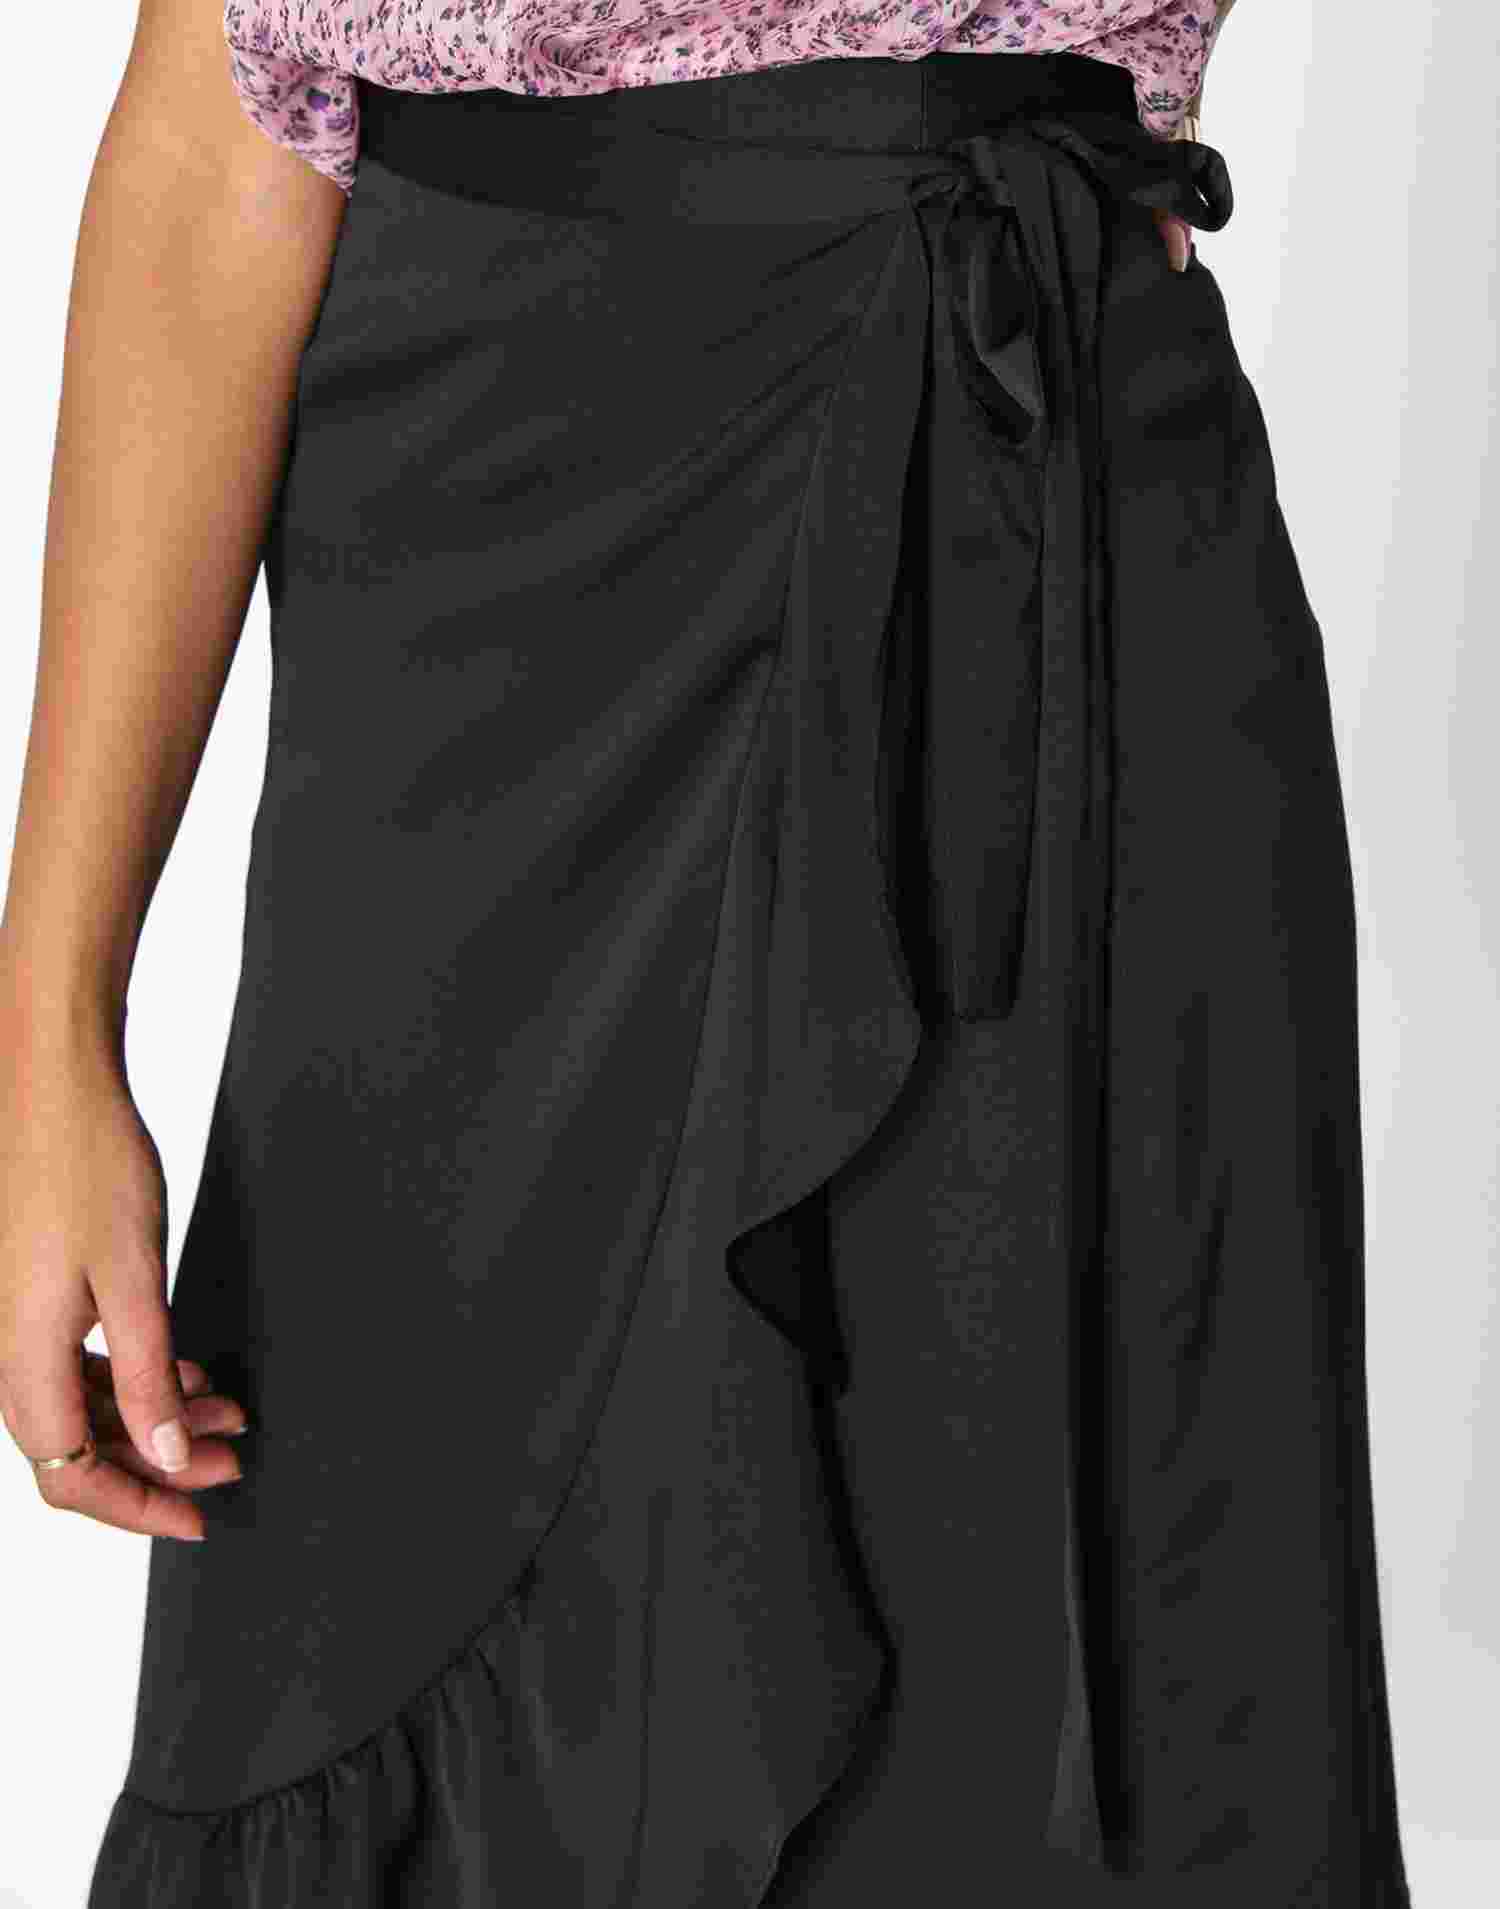 Incident, dogodek vzorec neo noir mika solid skirt lyseblå